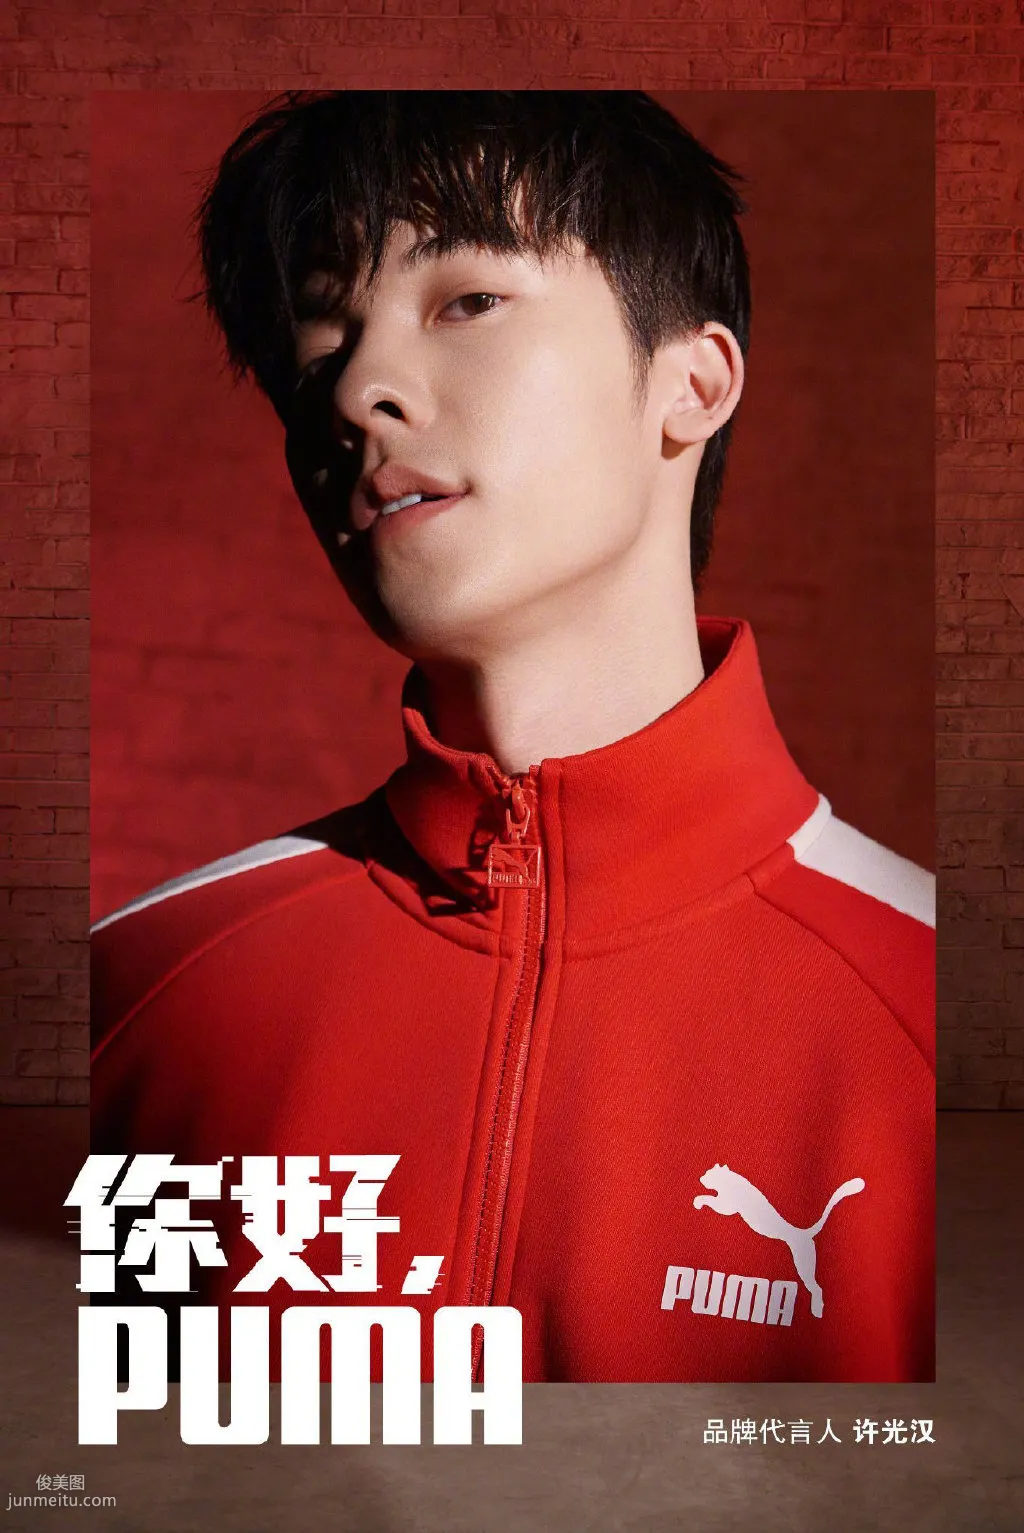 台湾帅哥许光汉红色运动衣套装帅气写真套图1